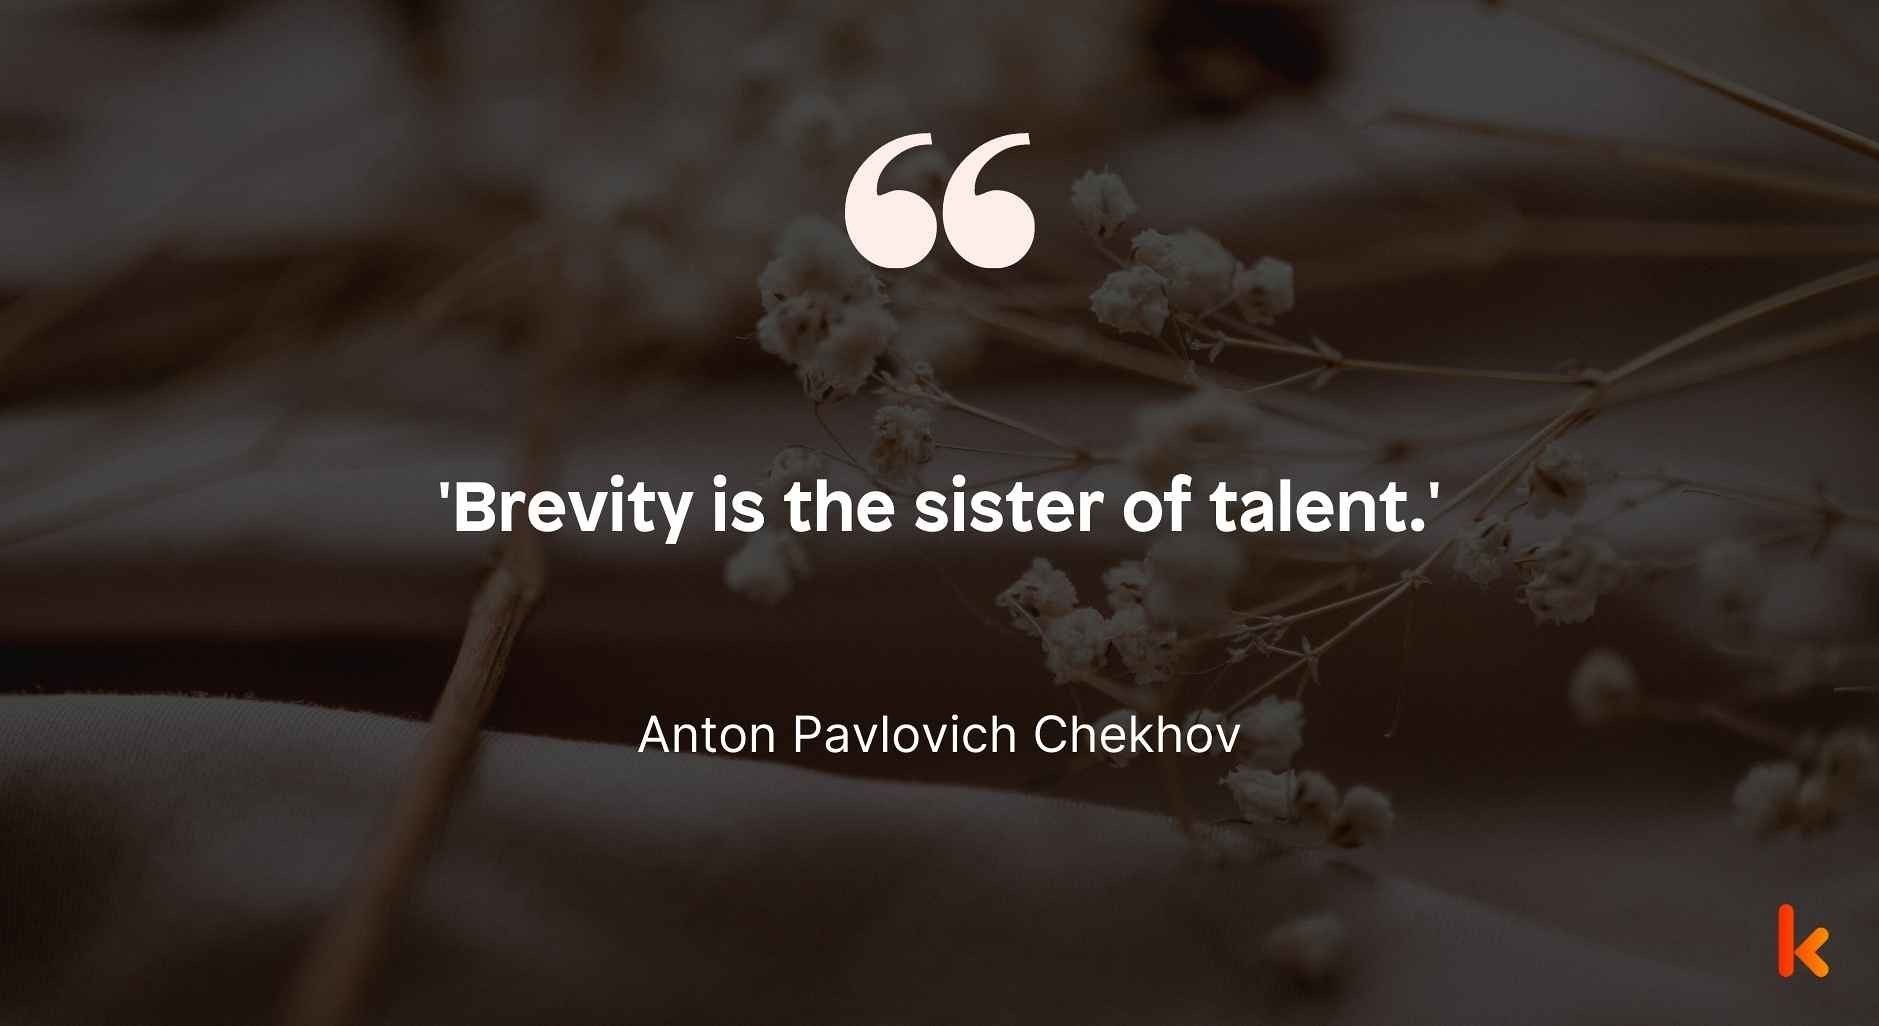 Brevity quote by Anton Pavlovich Chekhov